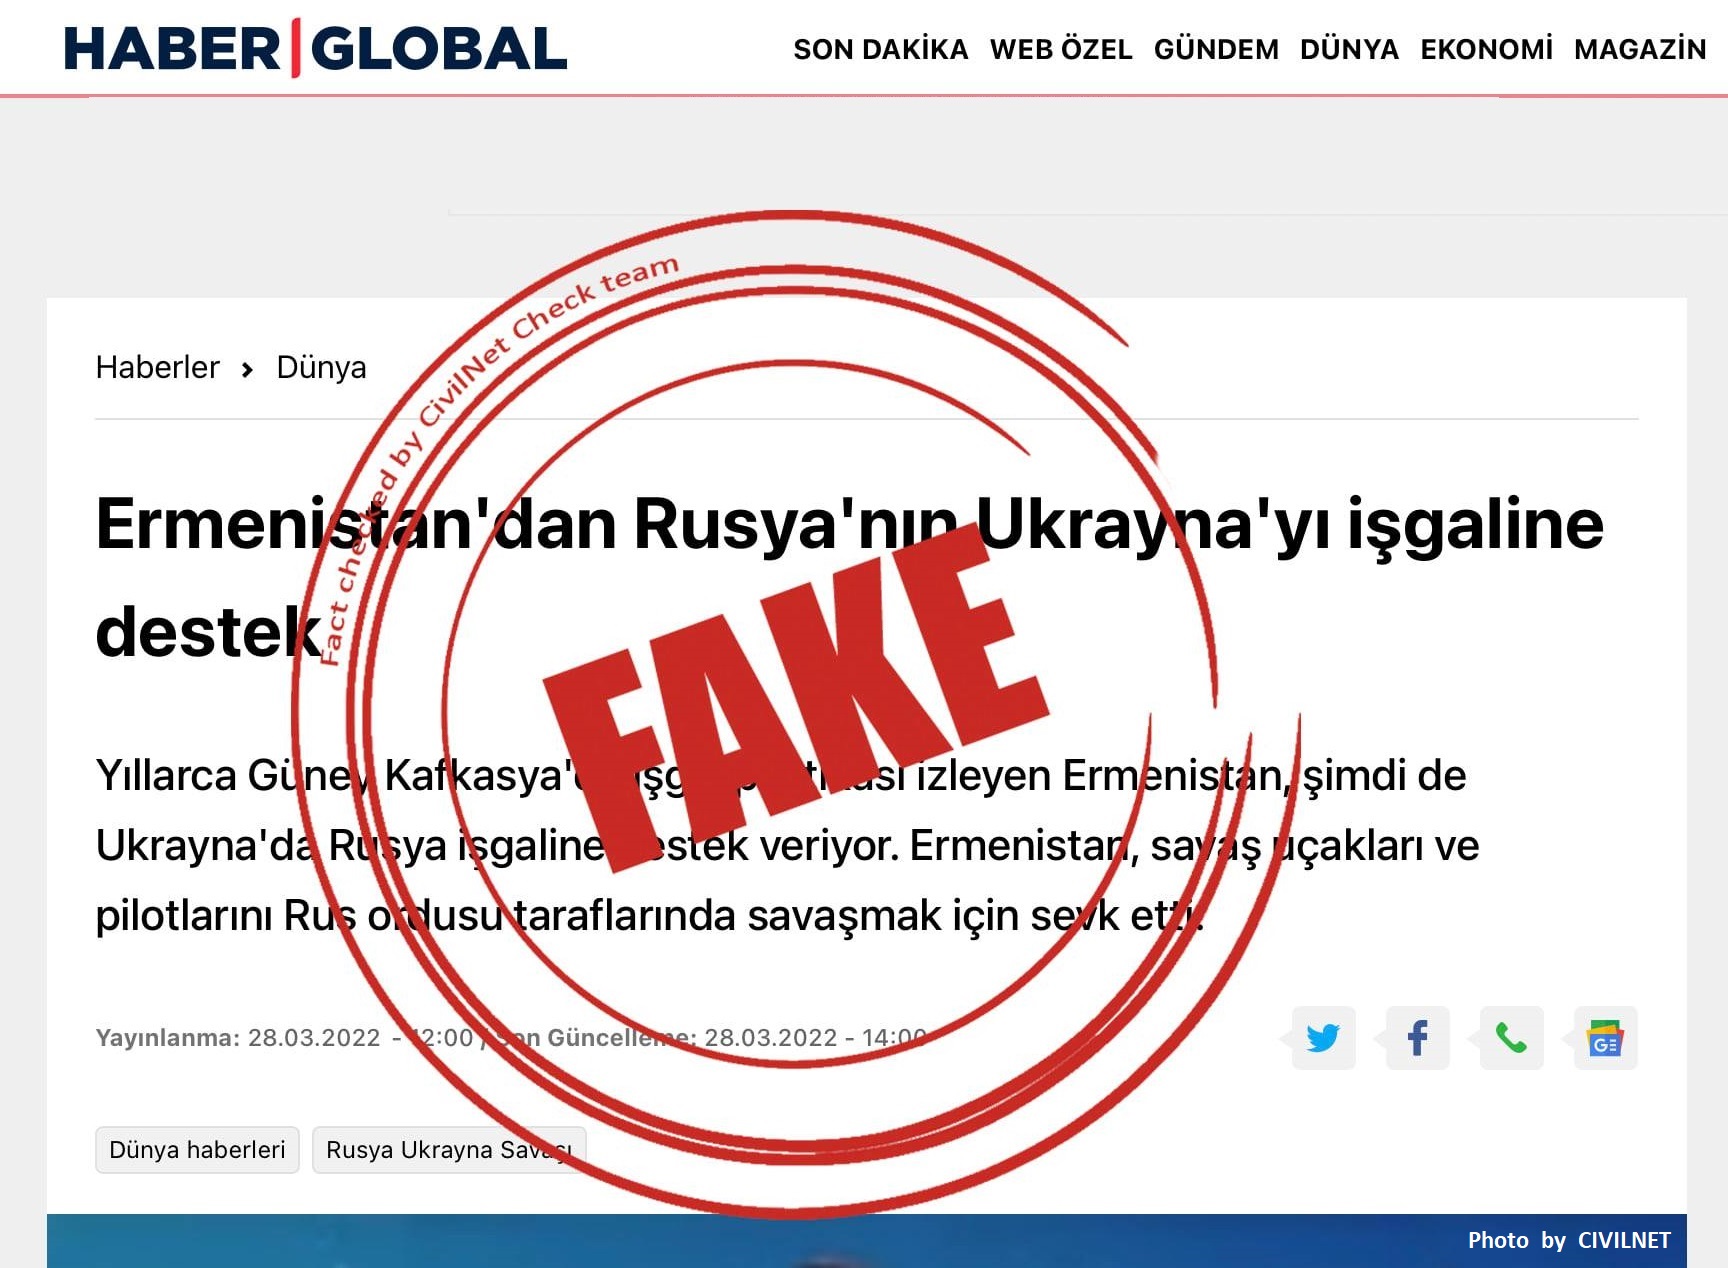 Ermenistan Savunma Bakanlığı’ndan “Haber Global’ın” sahte iddialarına yalanlama!